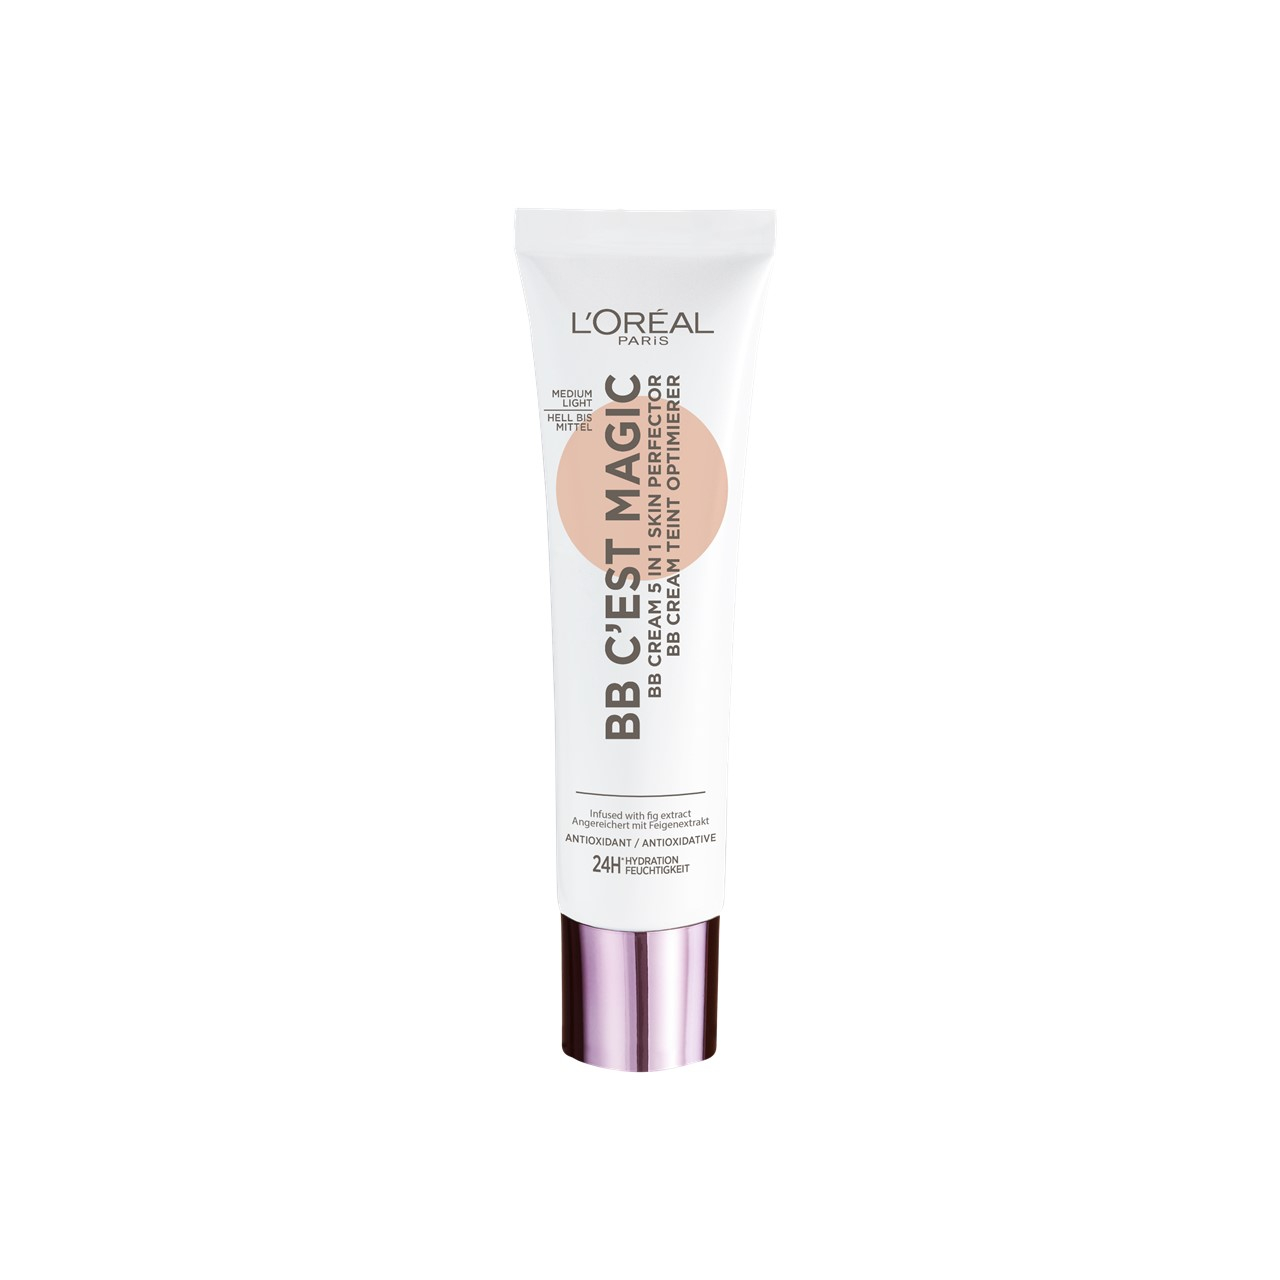 L'Oréal Paris C'est Magic BB Cream 03 Medium Light 30ml (1.01fl oz)